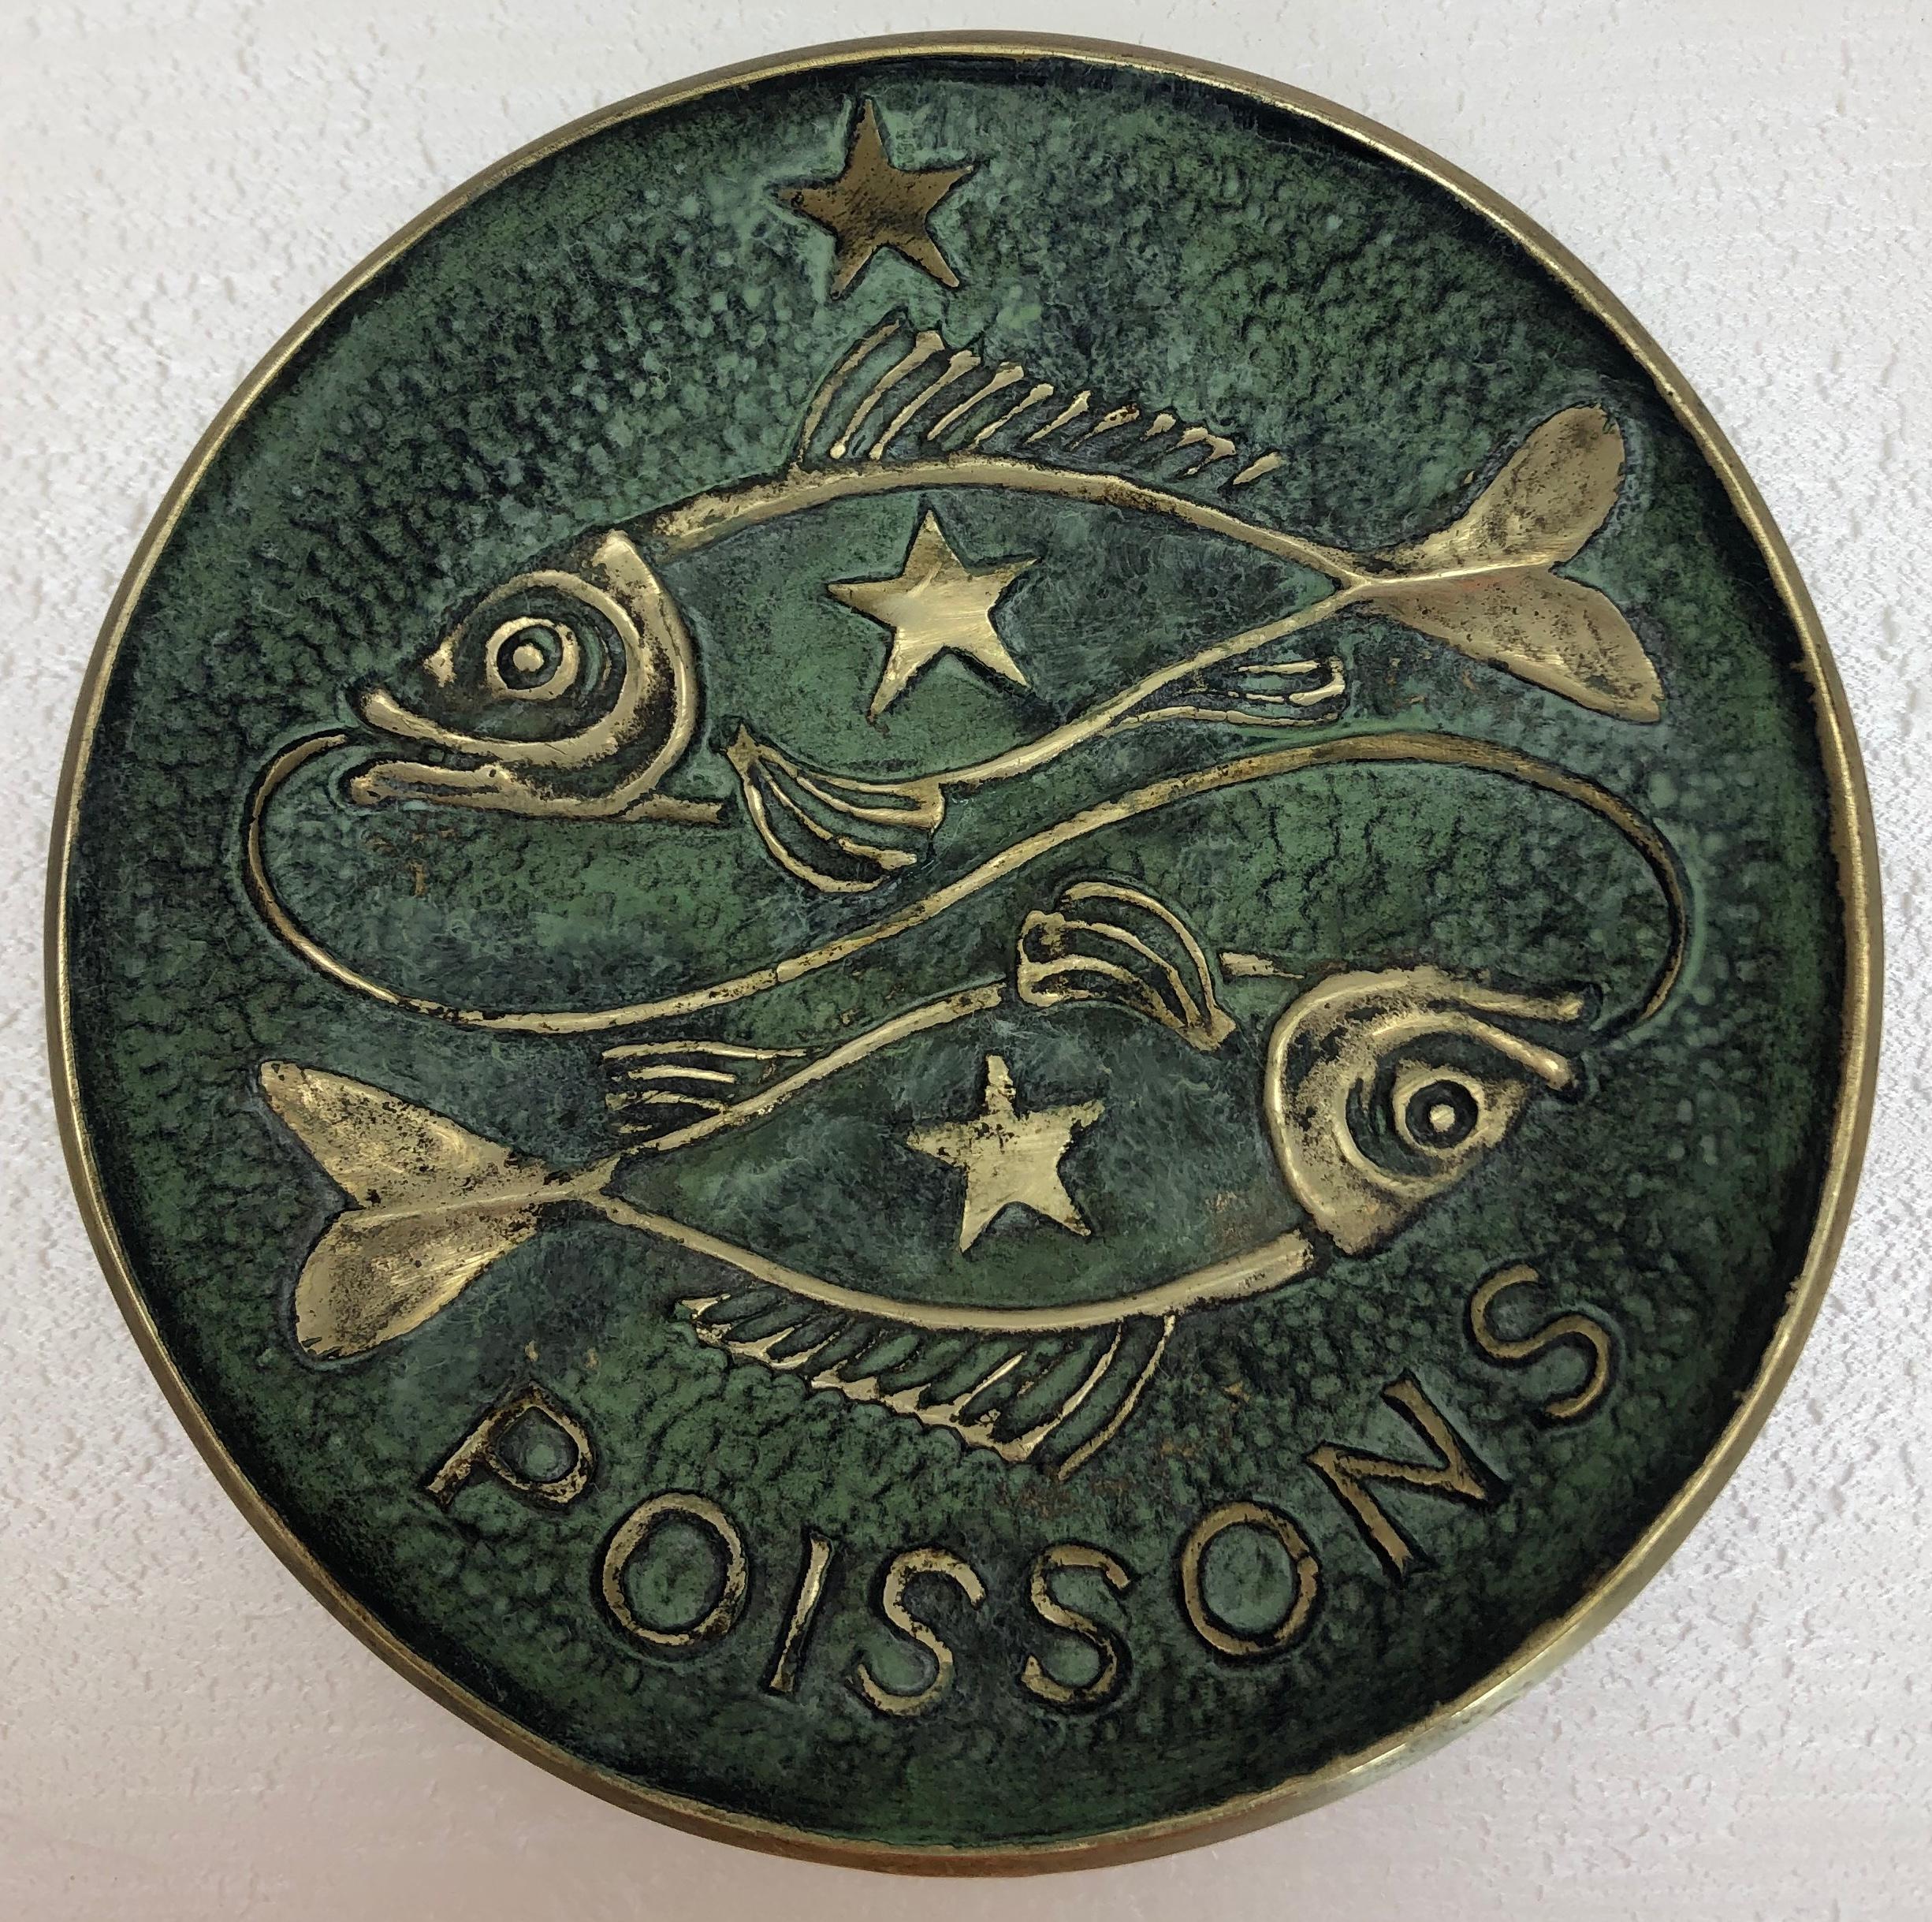 Bronze de Max Le Verrier qui fait un excellent porte-clés/vide-poche.

Les symboles de poissons sont absolument magnifiques, ils représentent le signe du zodiaque de ceux qui sont nés du 21 février au 20 mars, comme l'indique le fond de ce charmant